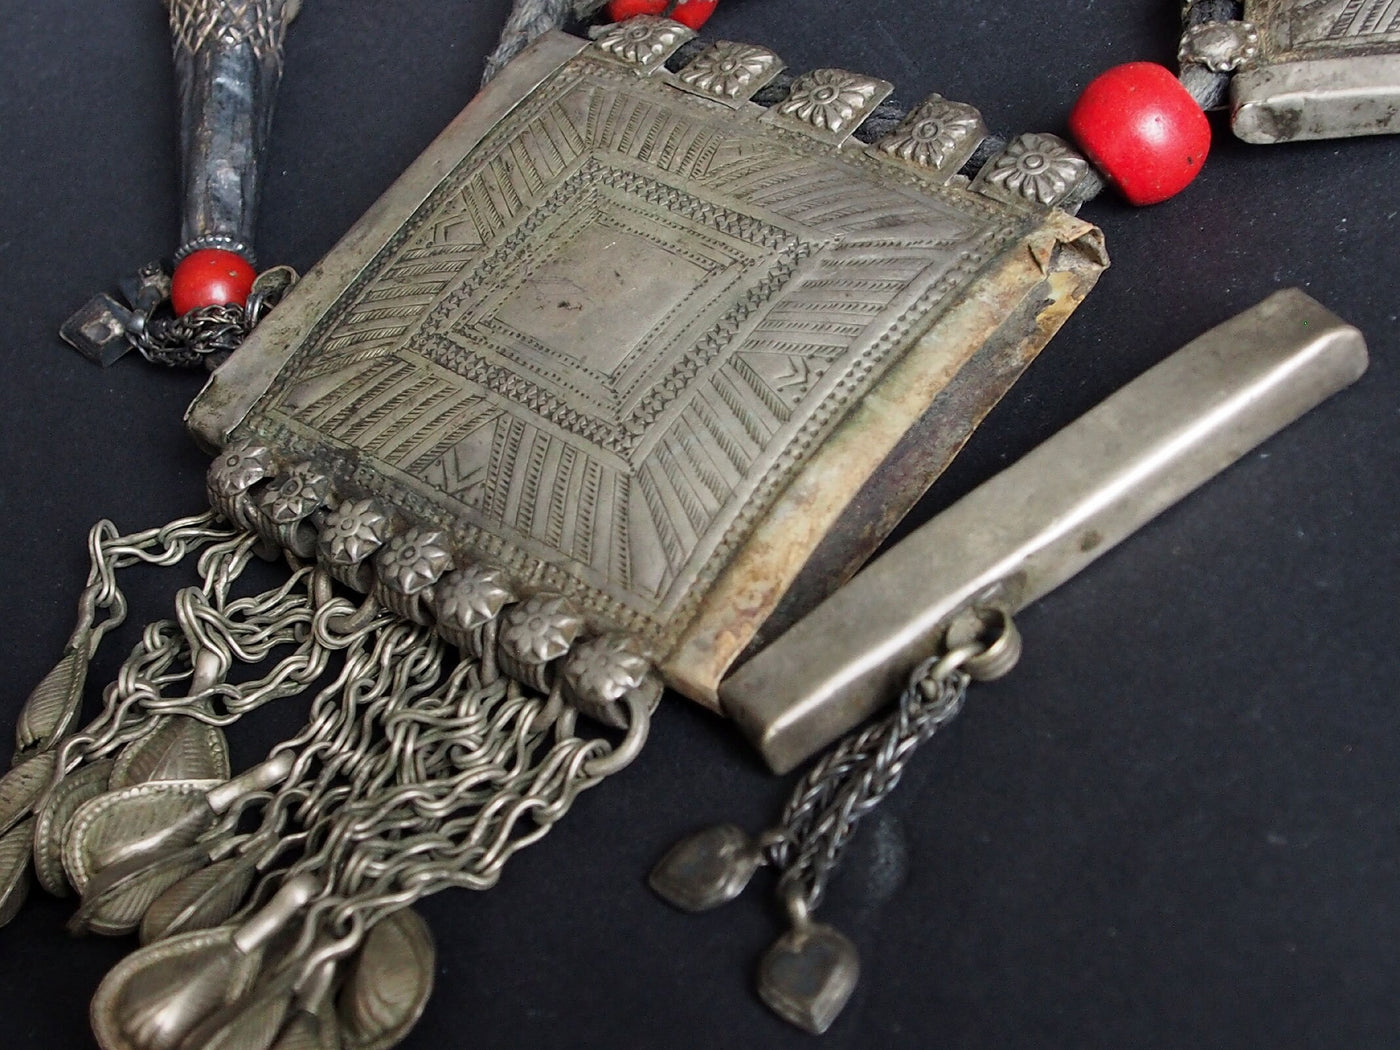 Antike Nomaden Silber Halsmomente Kette mit Amuletten Anhänger Quast Nuristan Swat Valley Afghanistan pakistan No:18/1  Orientsbazar   